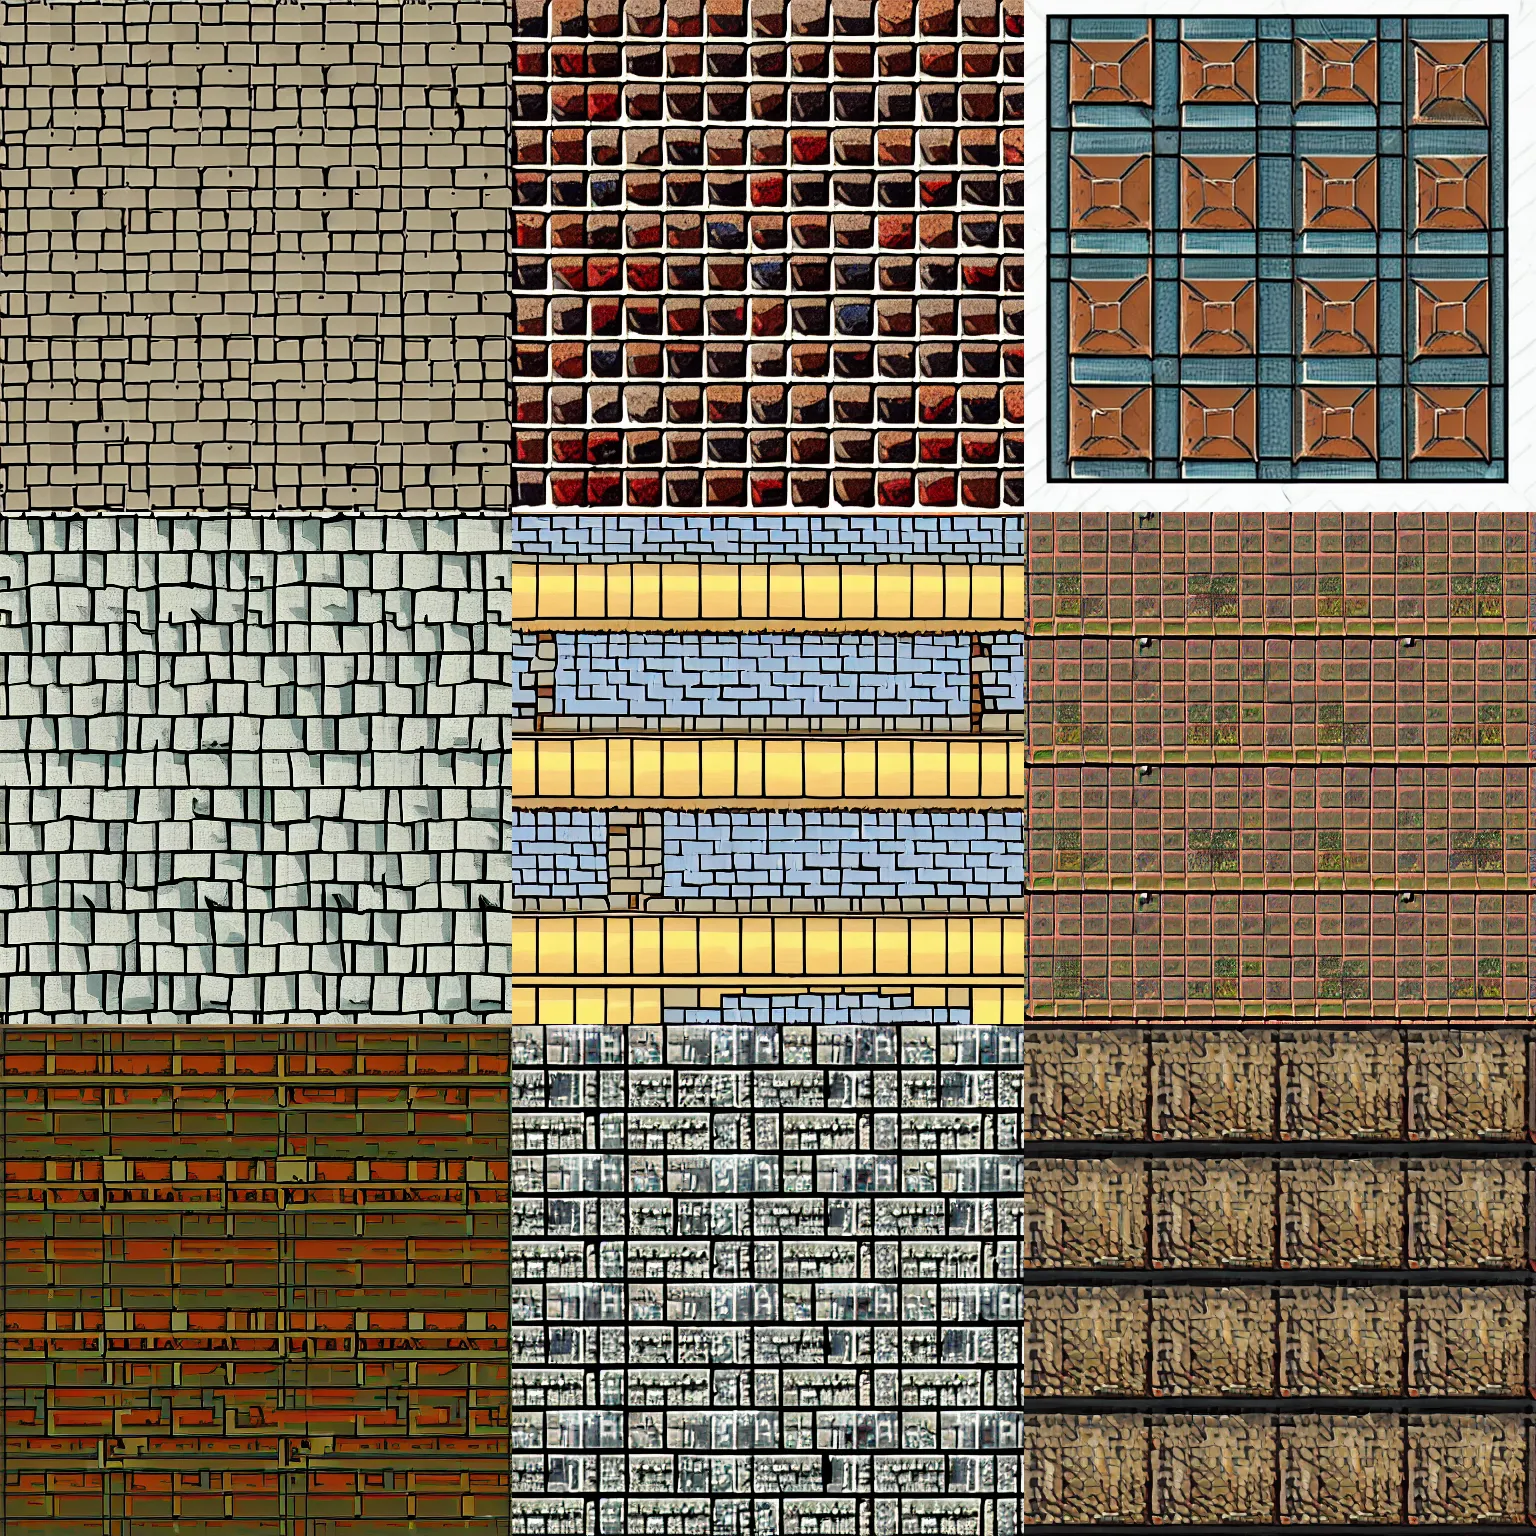 Prompt: medieval pixel art roof tile texture, studio ghibli, anime, jrpg